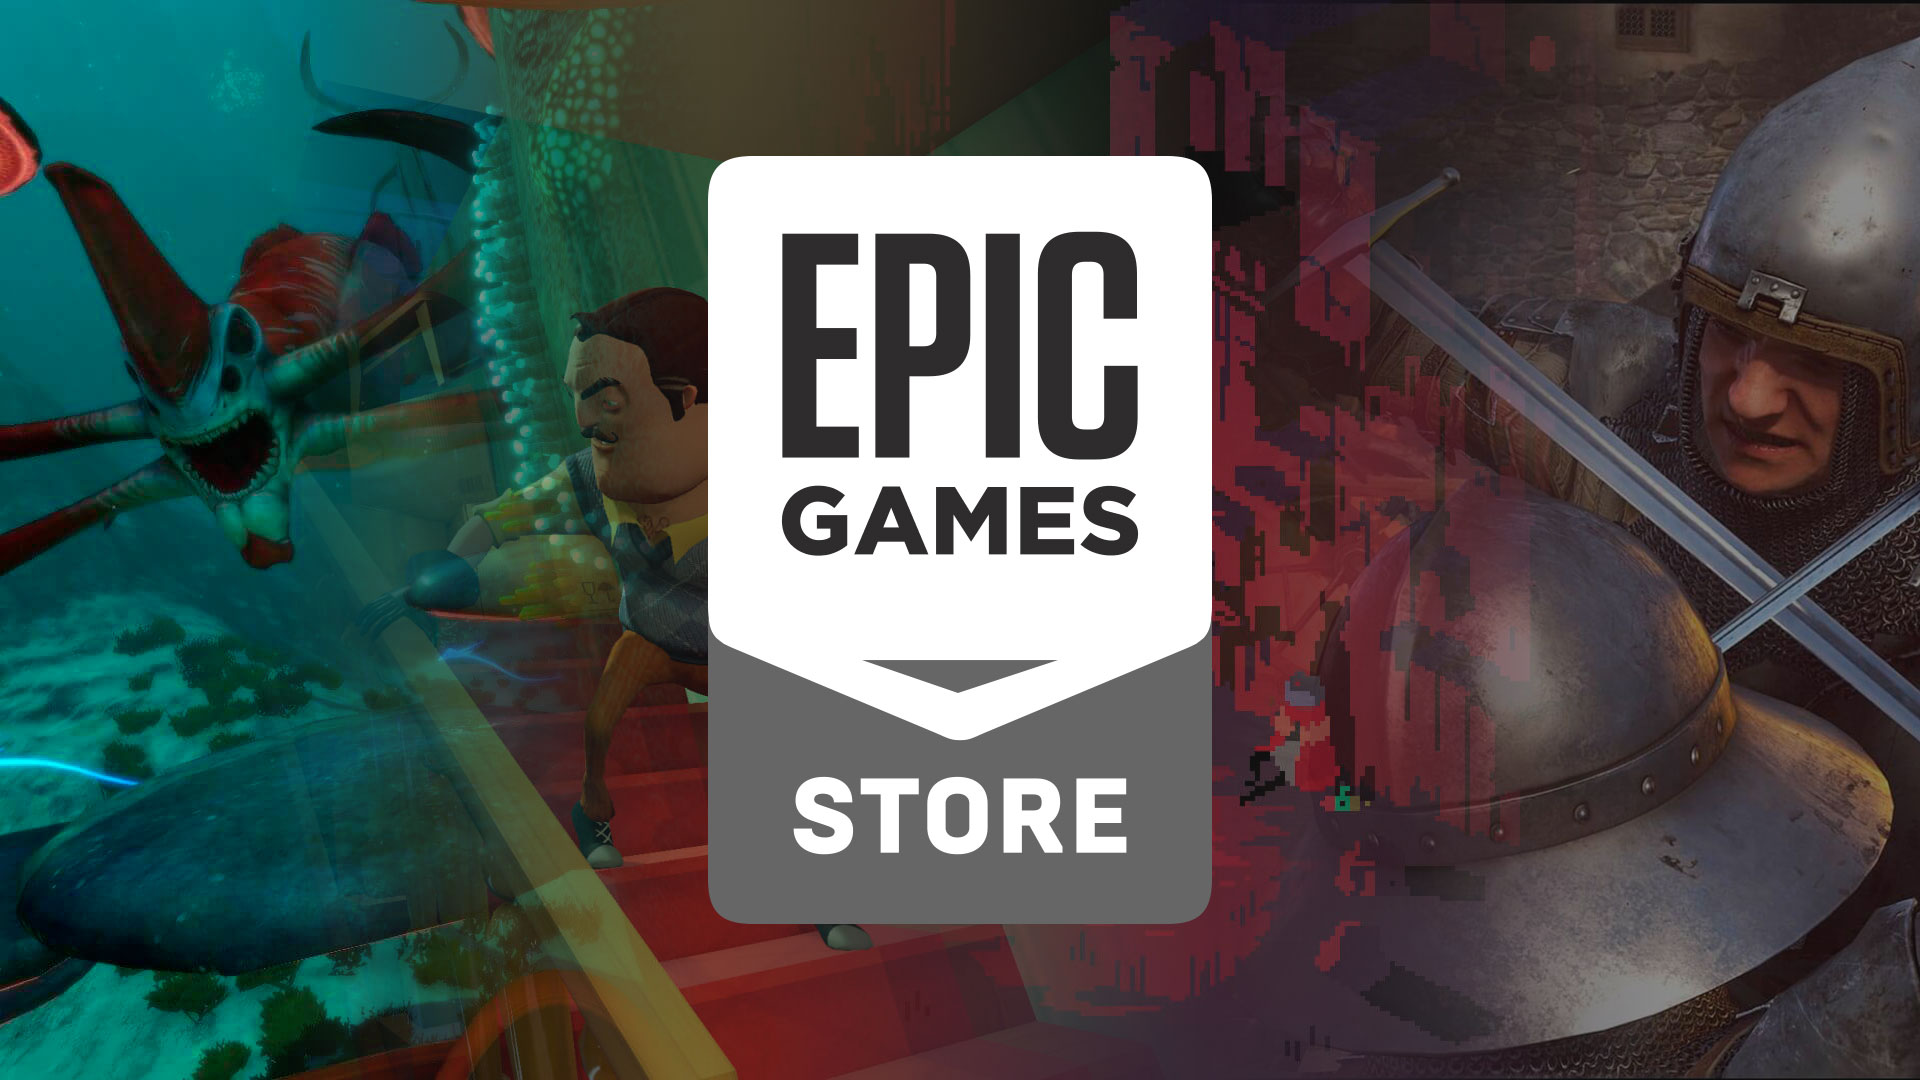 Næste uges gratis spil fra Epic er blevet afsløret